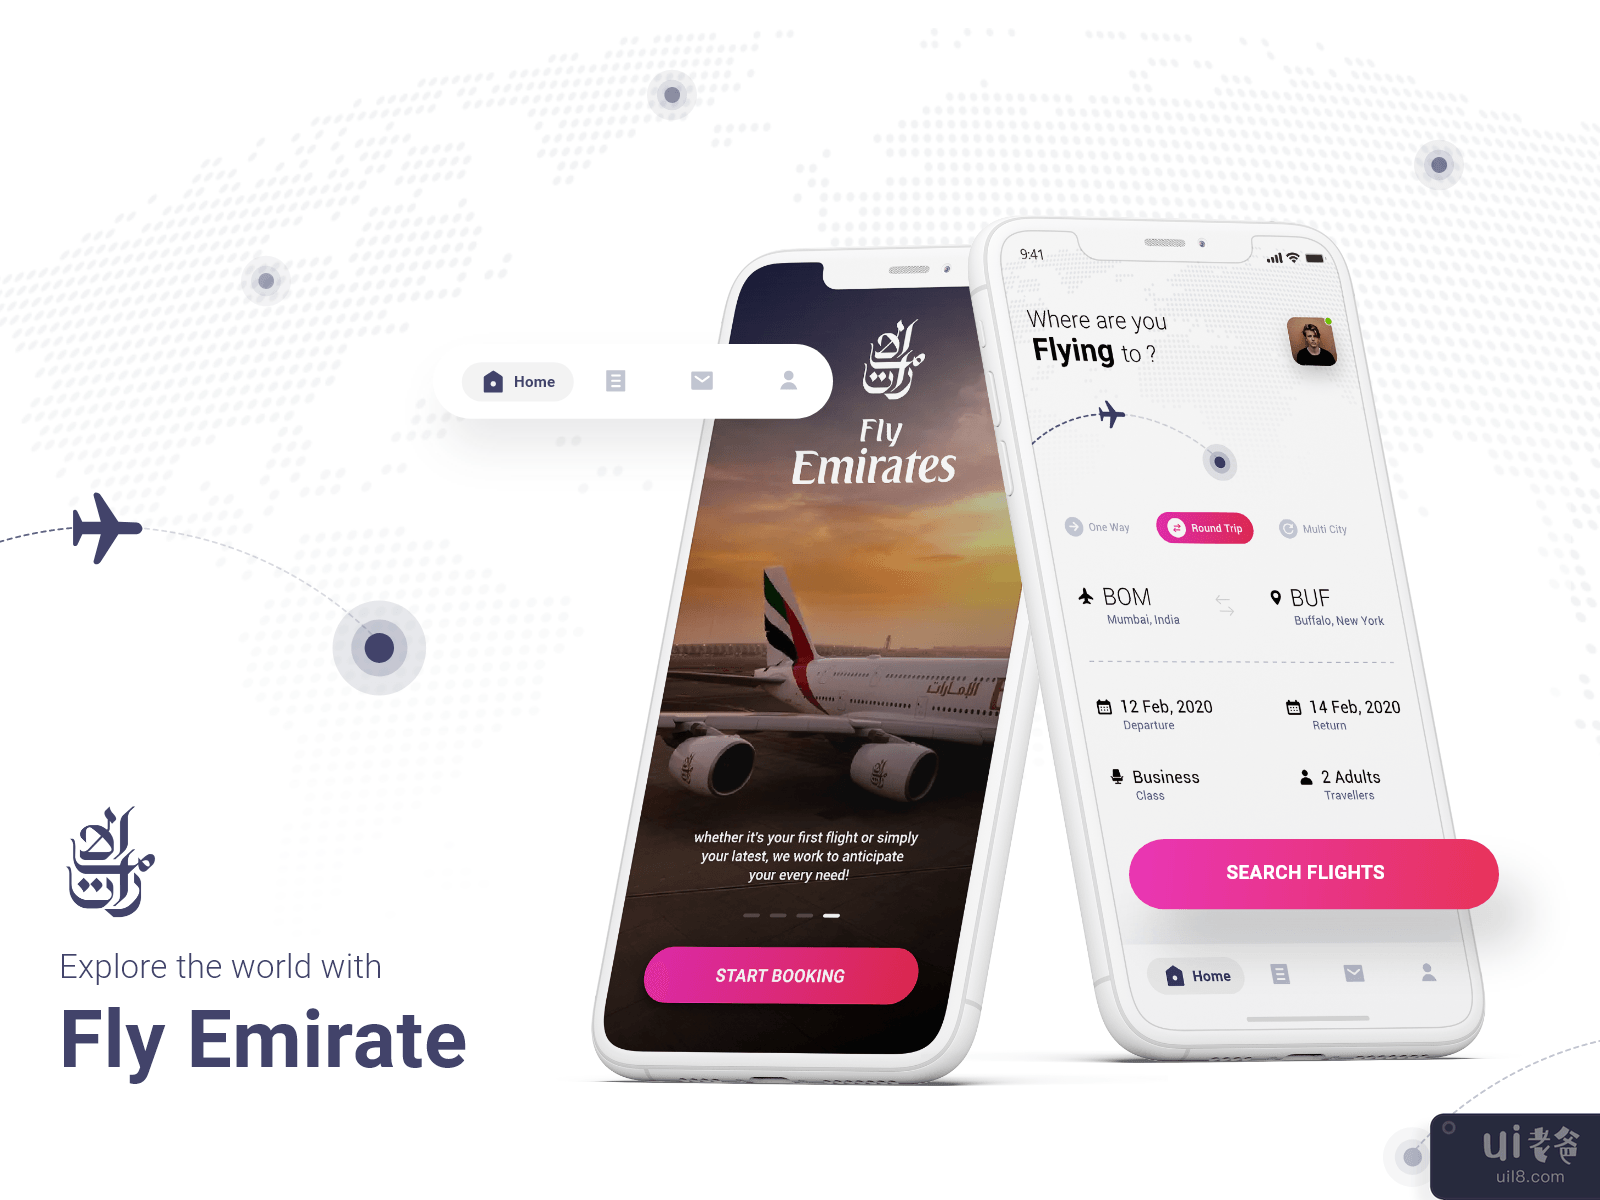 Flight Booking App - Emirates